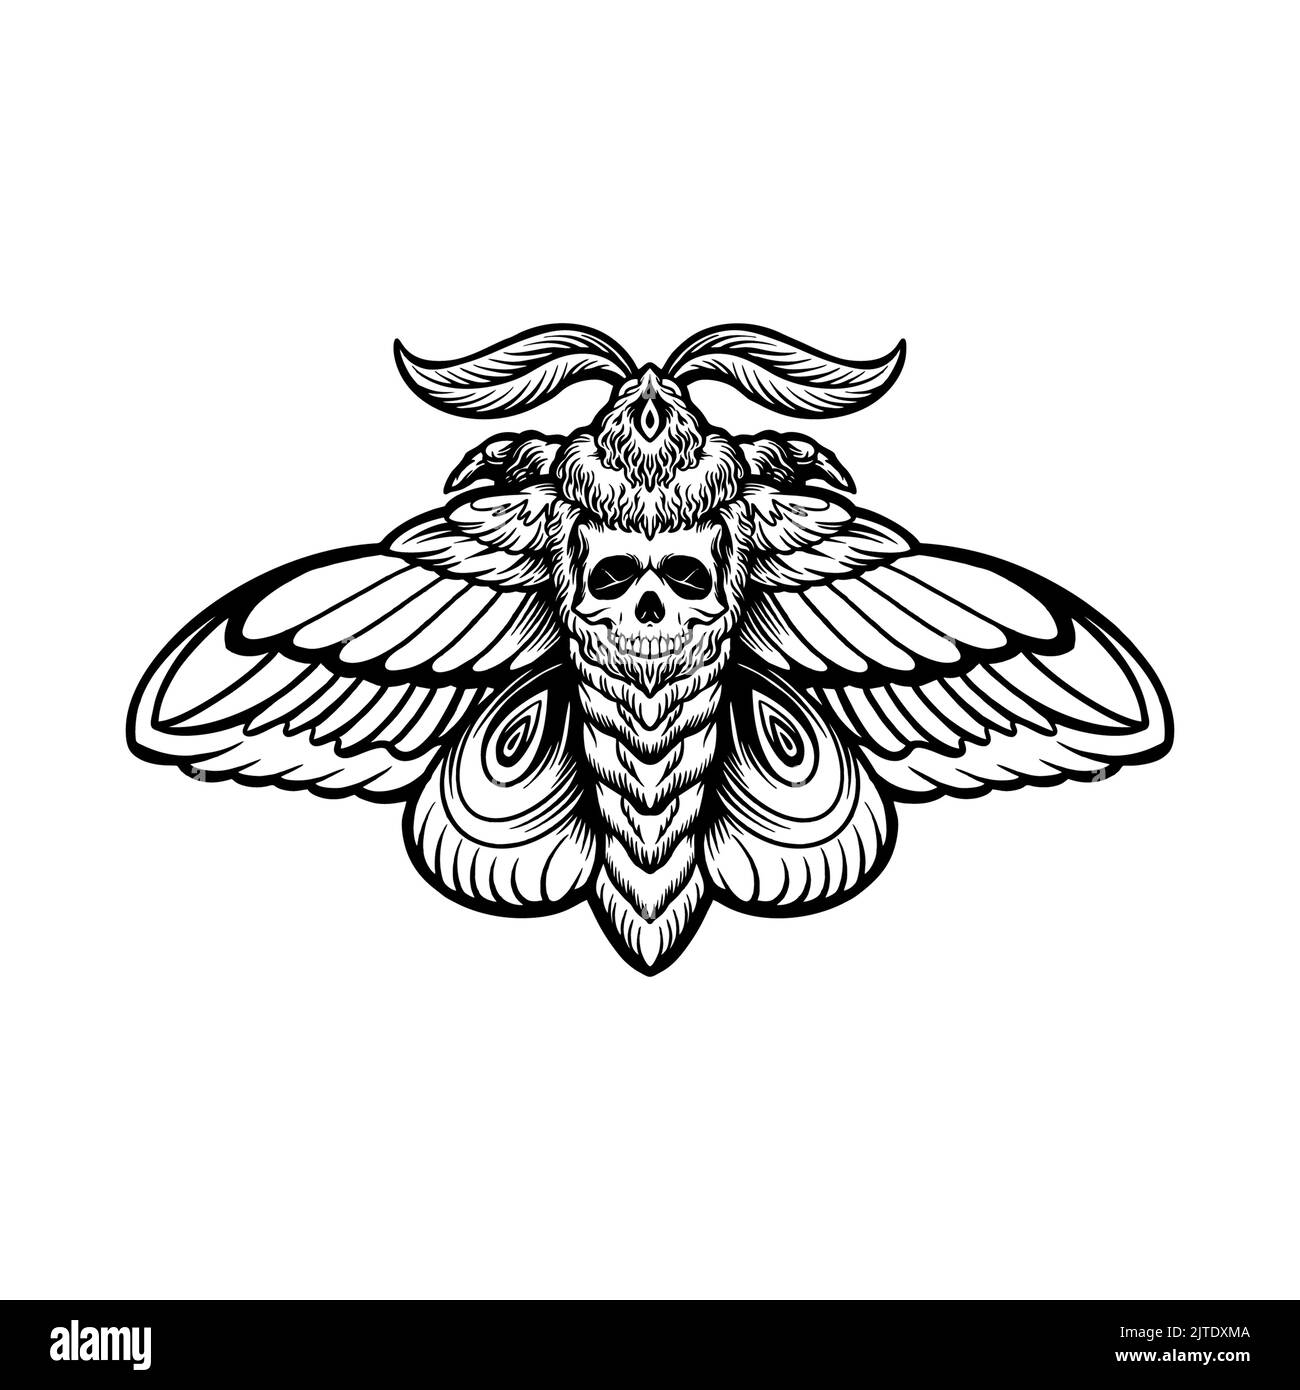 Farfalla Moth Skull Tattoo Silhouette illustrazioni vettoriali per il tuo lavoro Logo, mascotte merchandise t-shirt, adesivi e disegni di etichette, poster, greeti Foto Stock